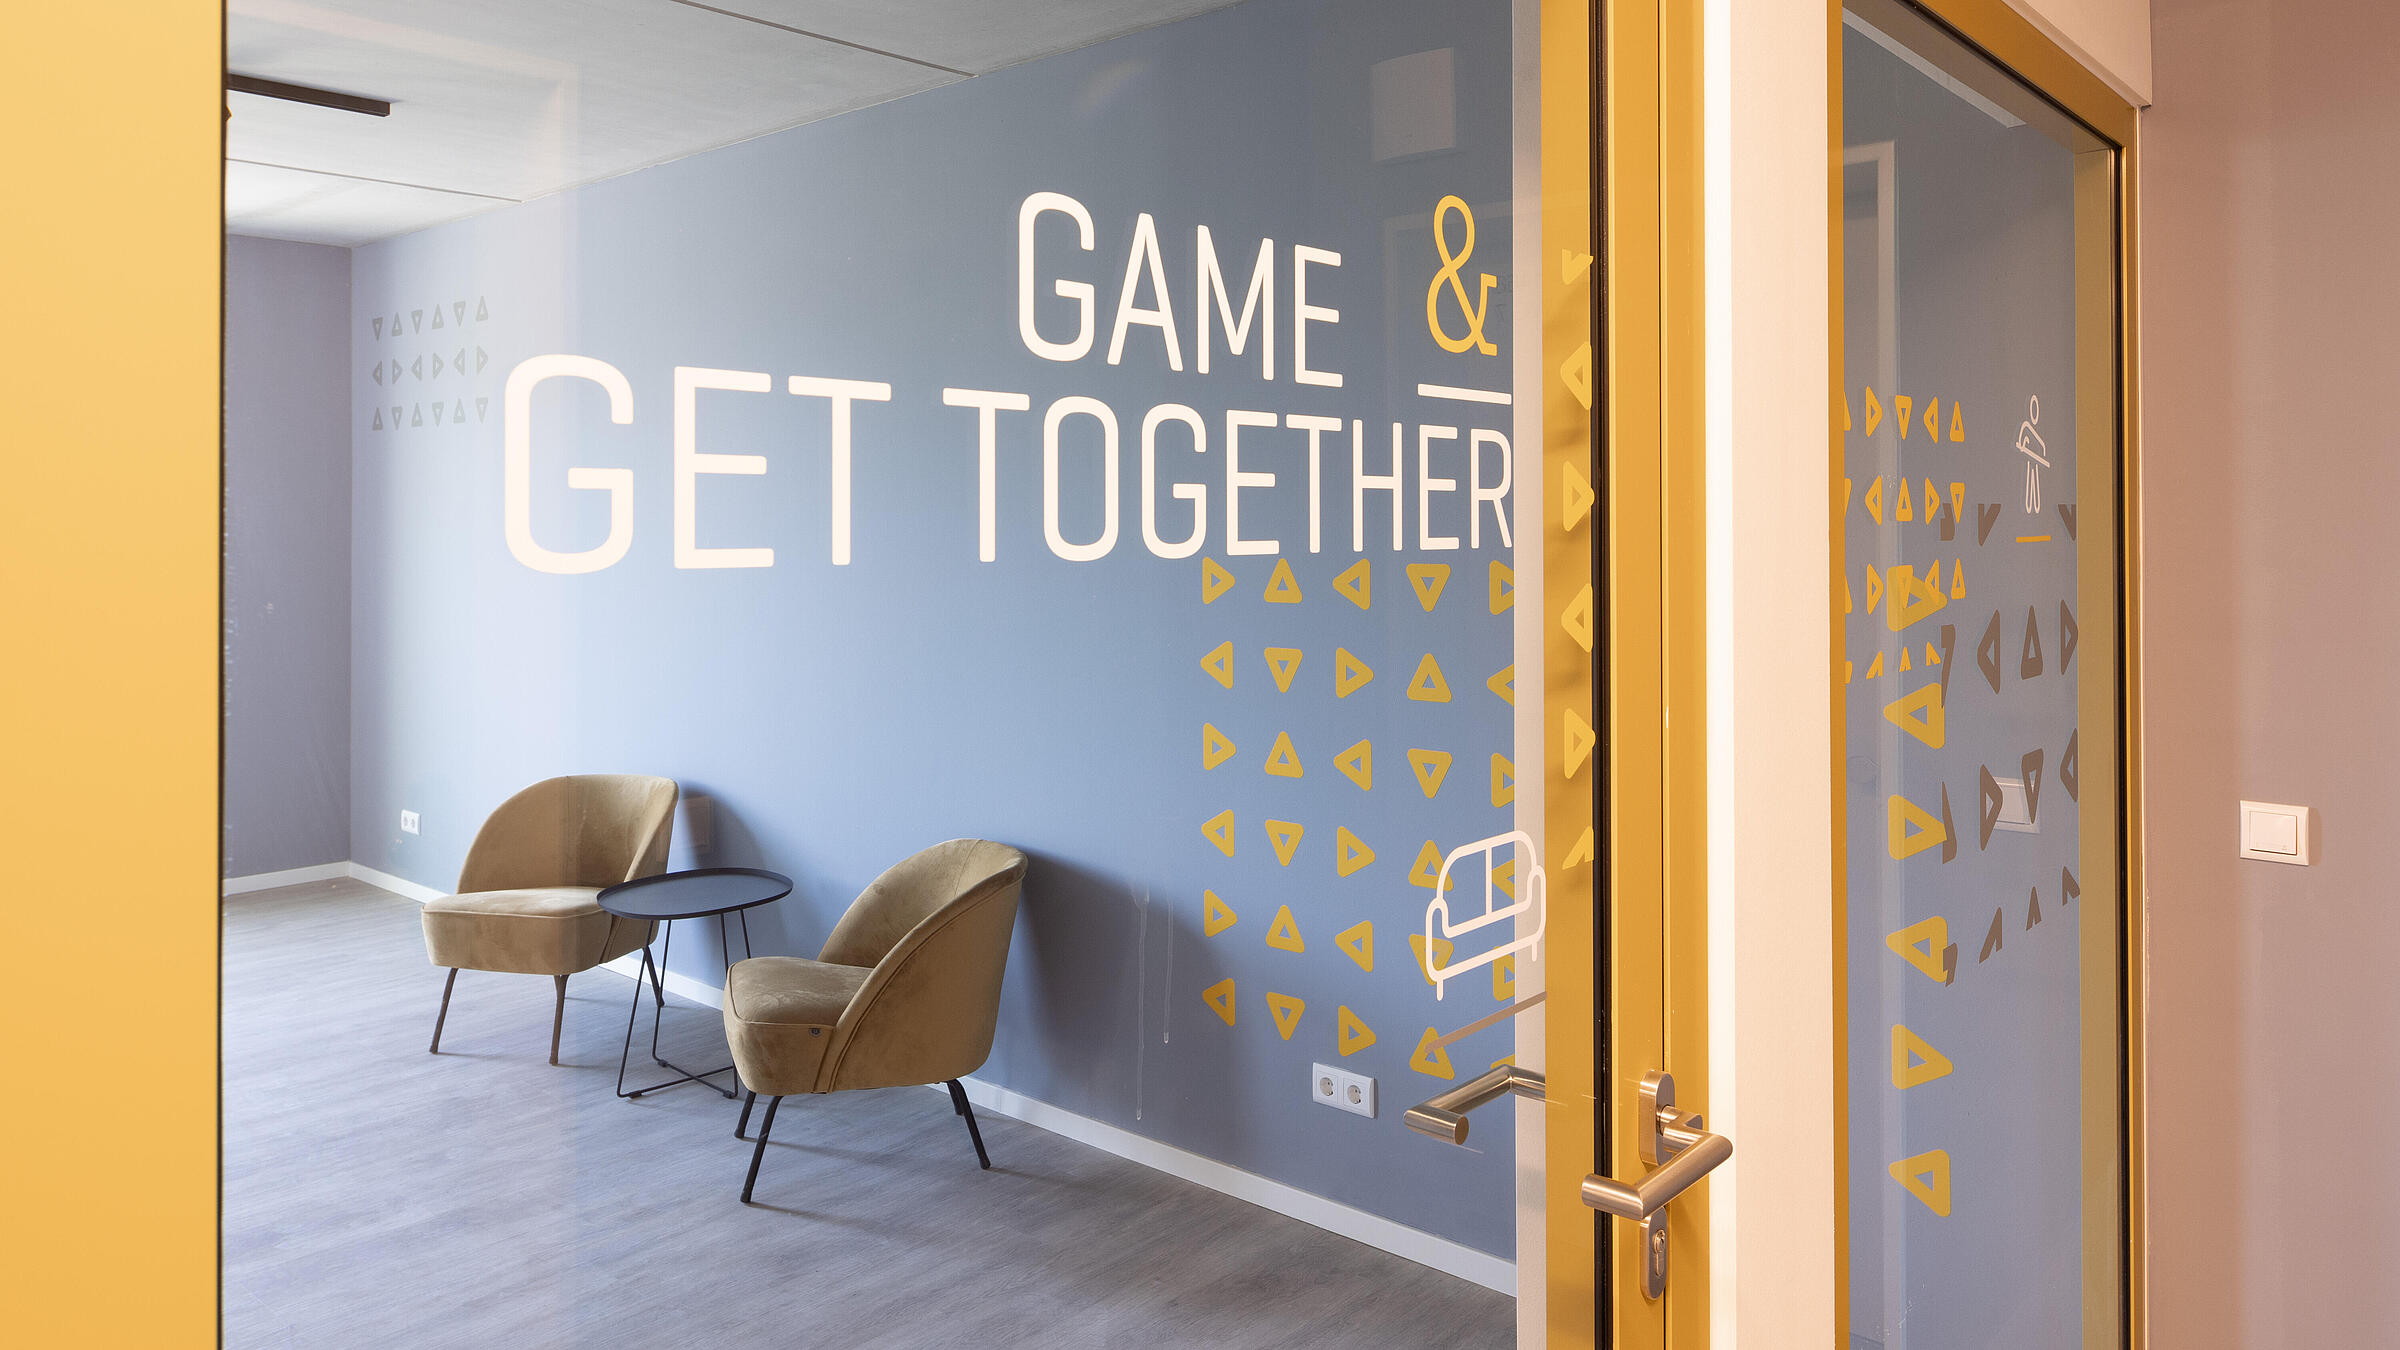 Innenaufnahme zeigt die Glastür zur Gemeinschaftsfläche "Game & Get Together".